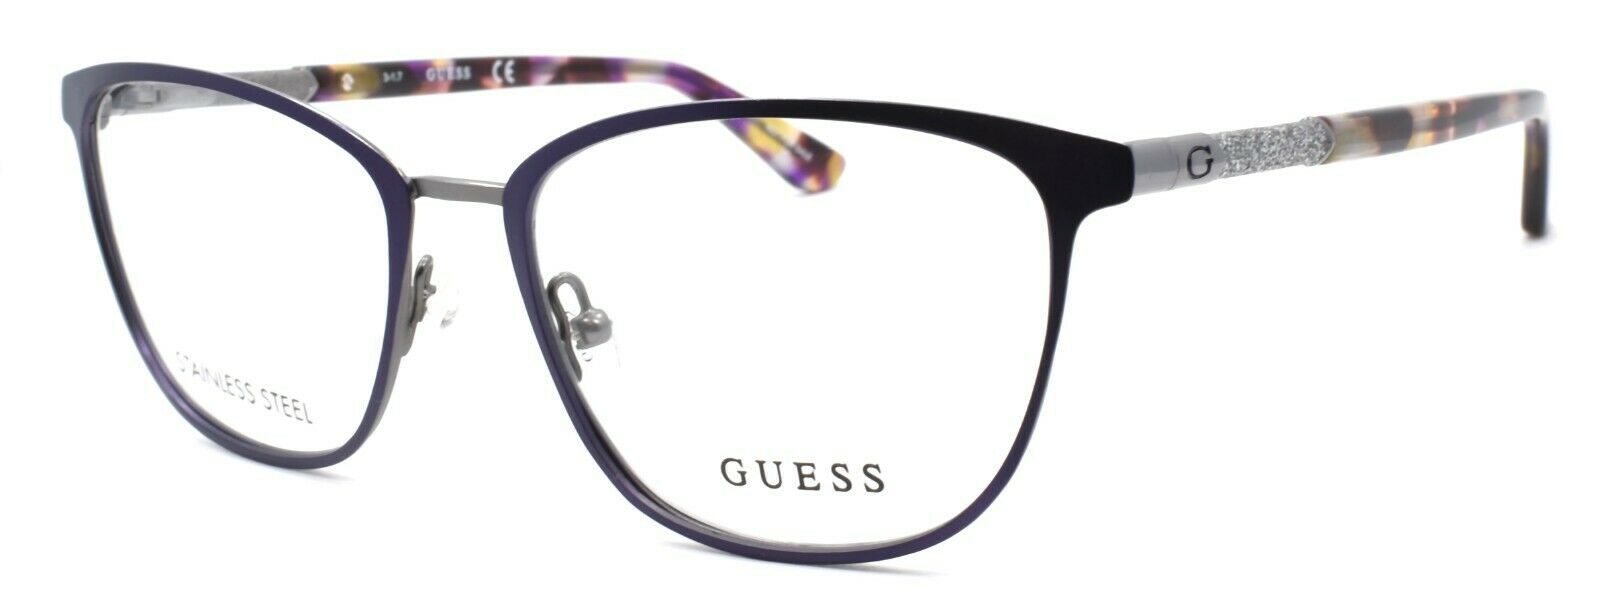 1-GUESS GU2659 082 Women's Eyeglasses Frames 51-17-140 Purple + CASE-664689921355-IKSpecs